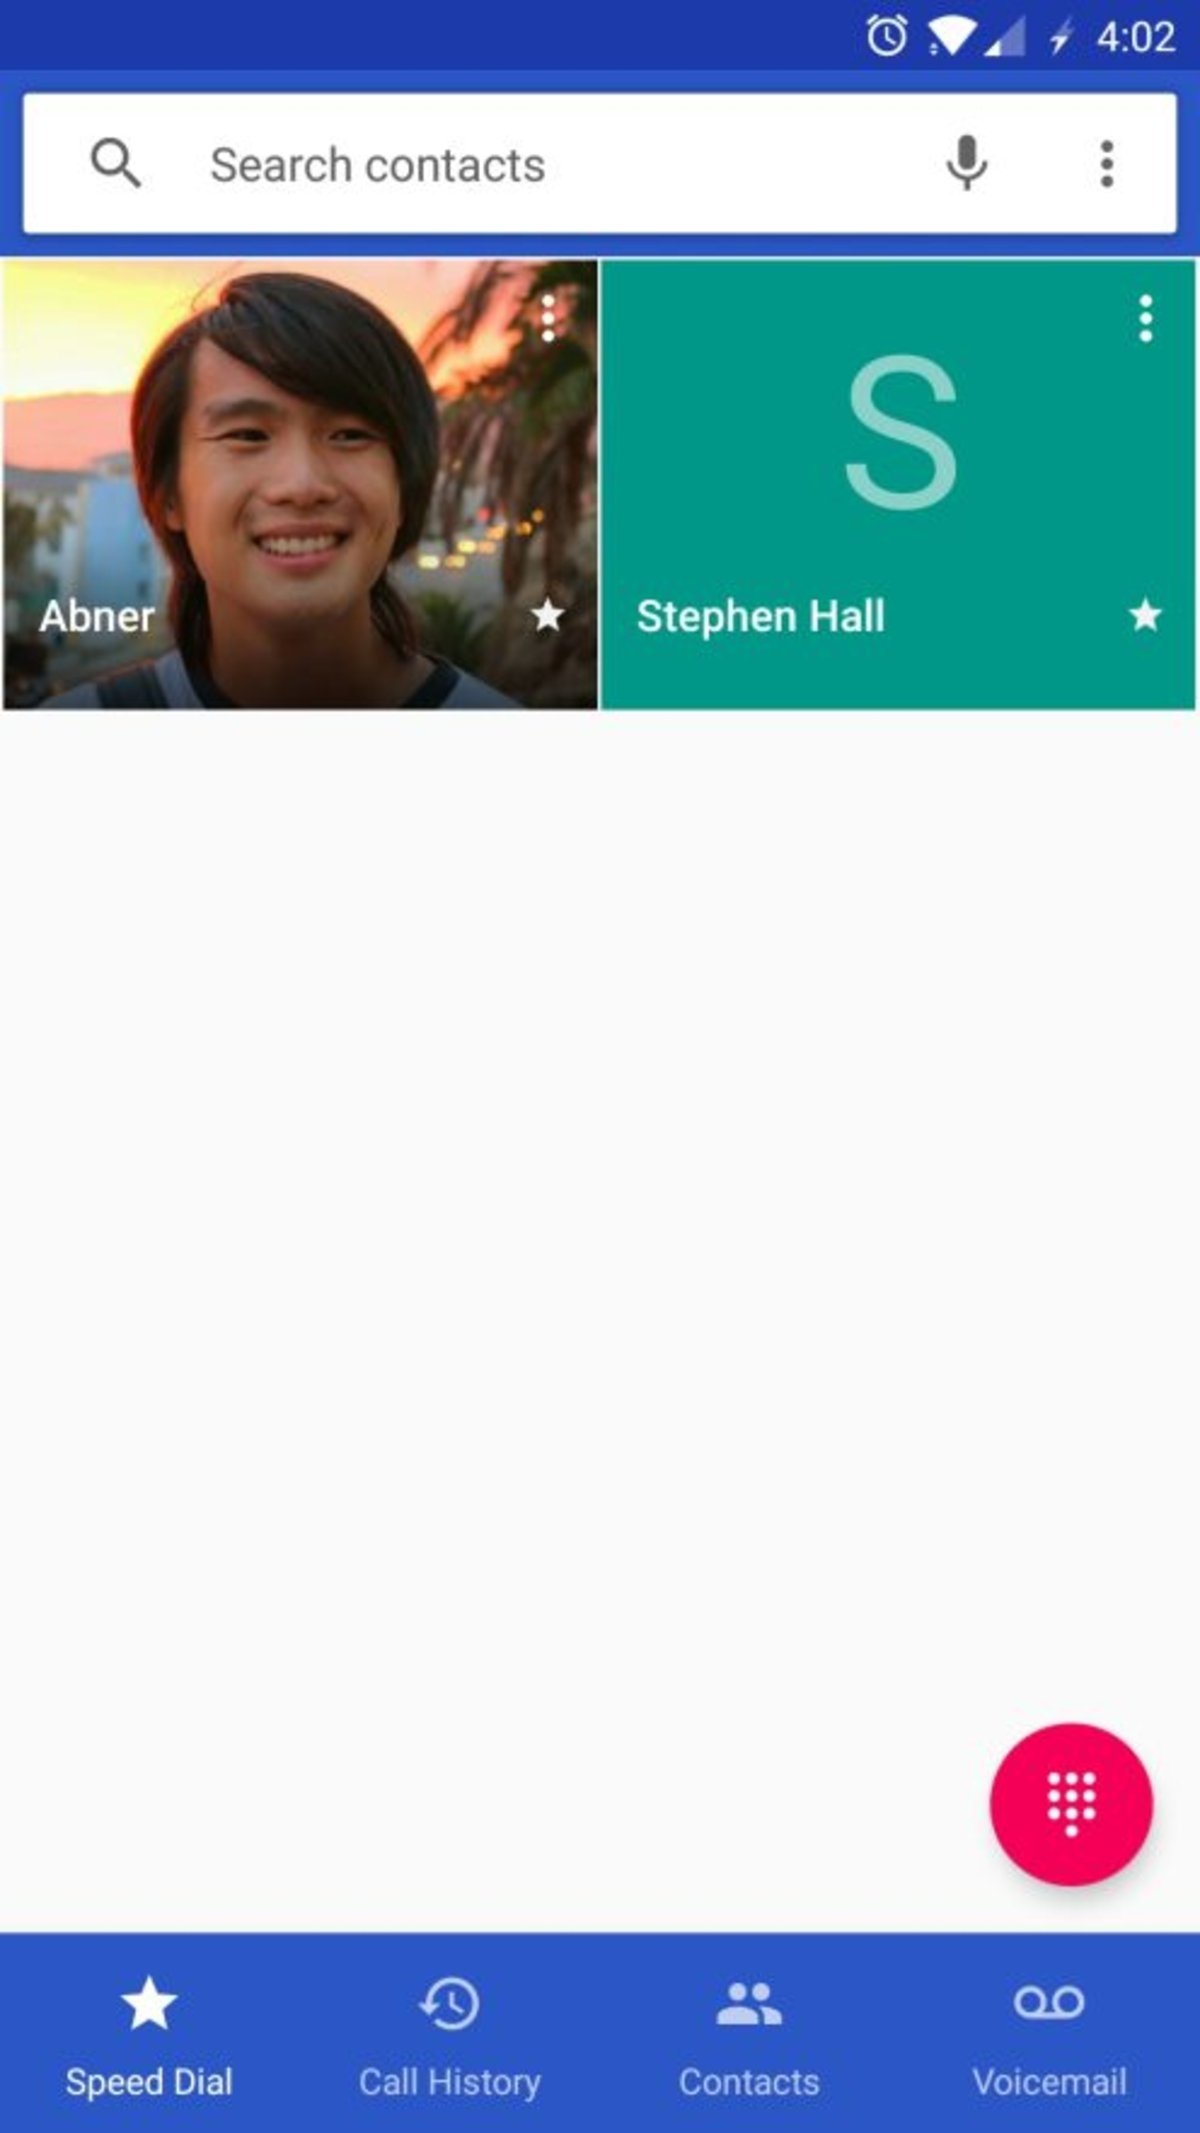 La app de teléfono de Google estrenará nuevo diseño con barra de navegación inferior